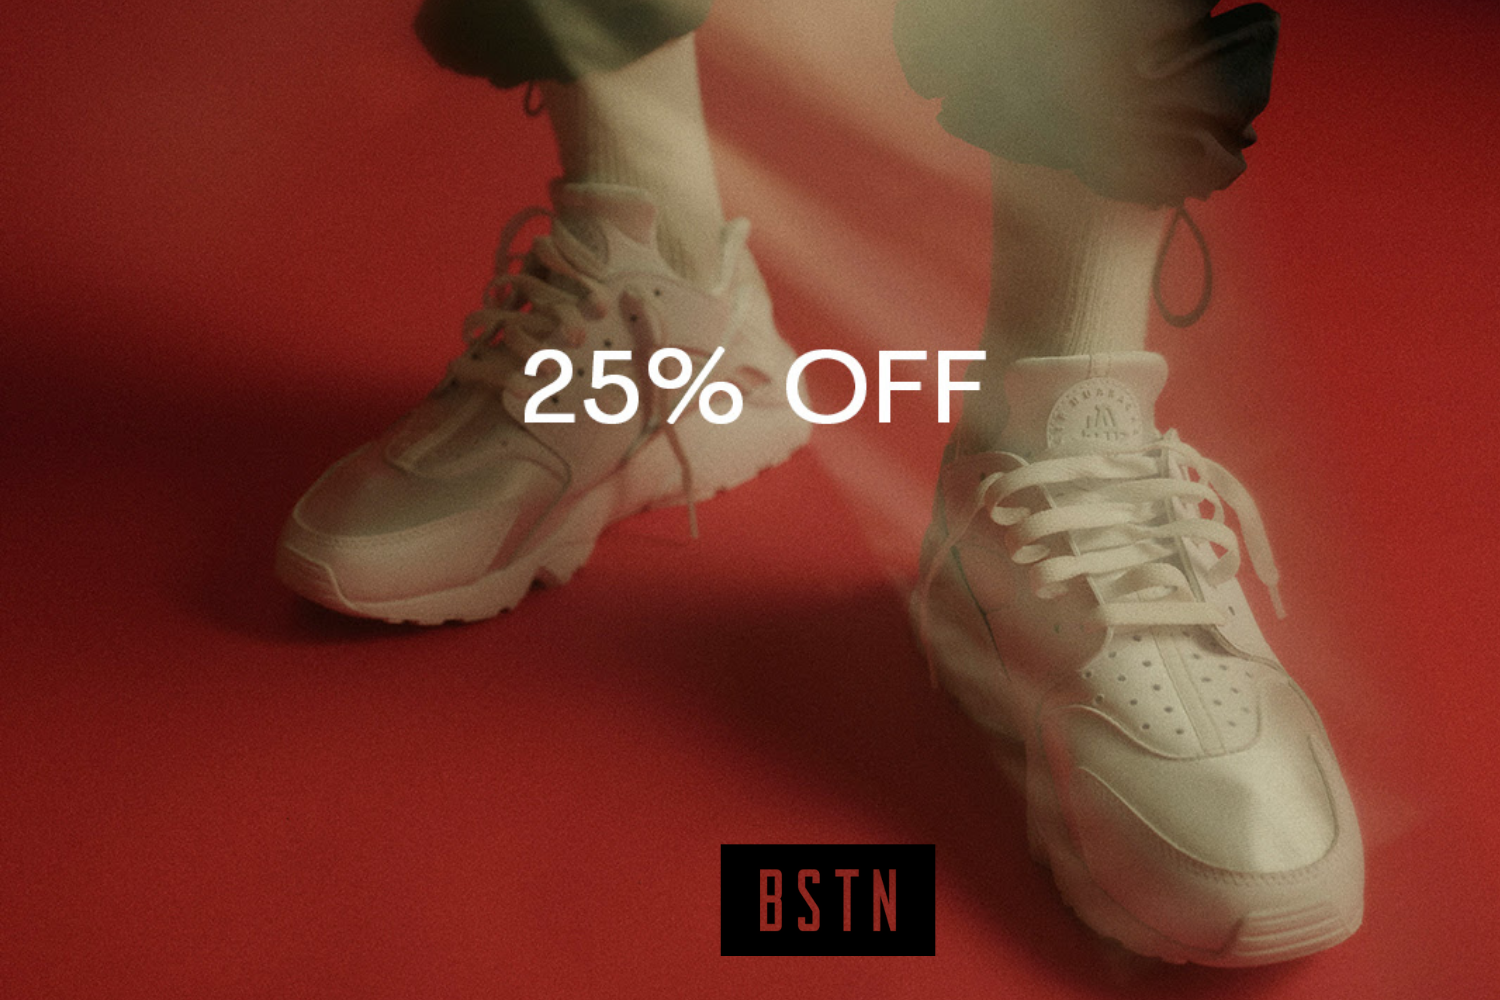 Ontvang 25% korting bij BTSN op footwear en apparel